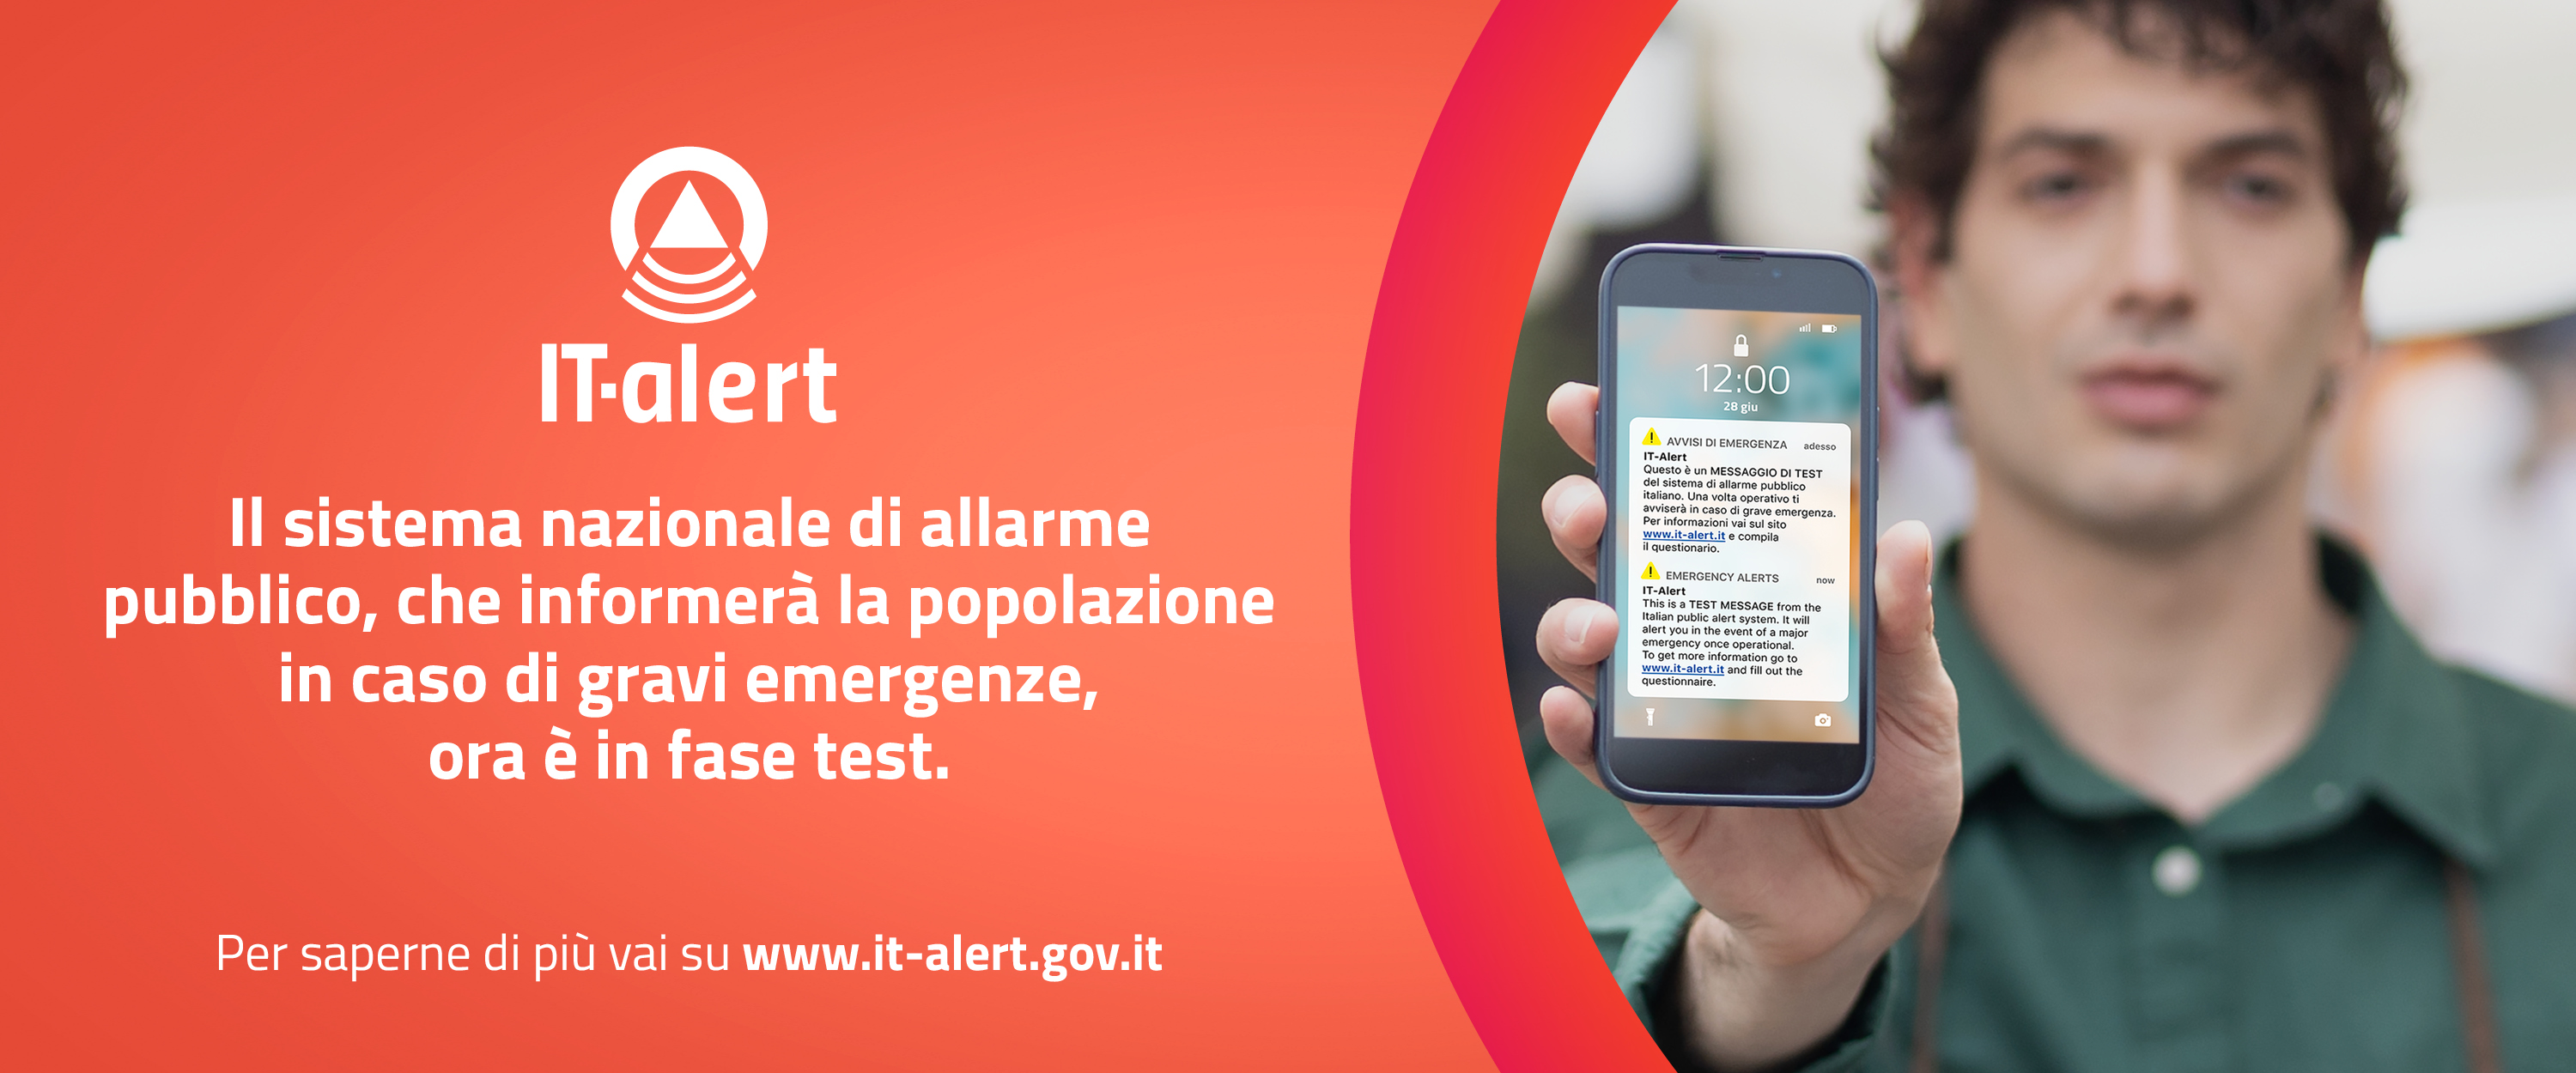 Sistema di allarme pubblico IT-alert  - Fase di sperimentazione - Lunedì 10 luglio alle ore 12.00 il primo messaggio di test a tutti gli utenti del territorio dell'Emilia-Romagna